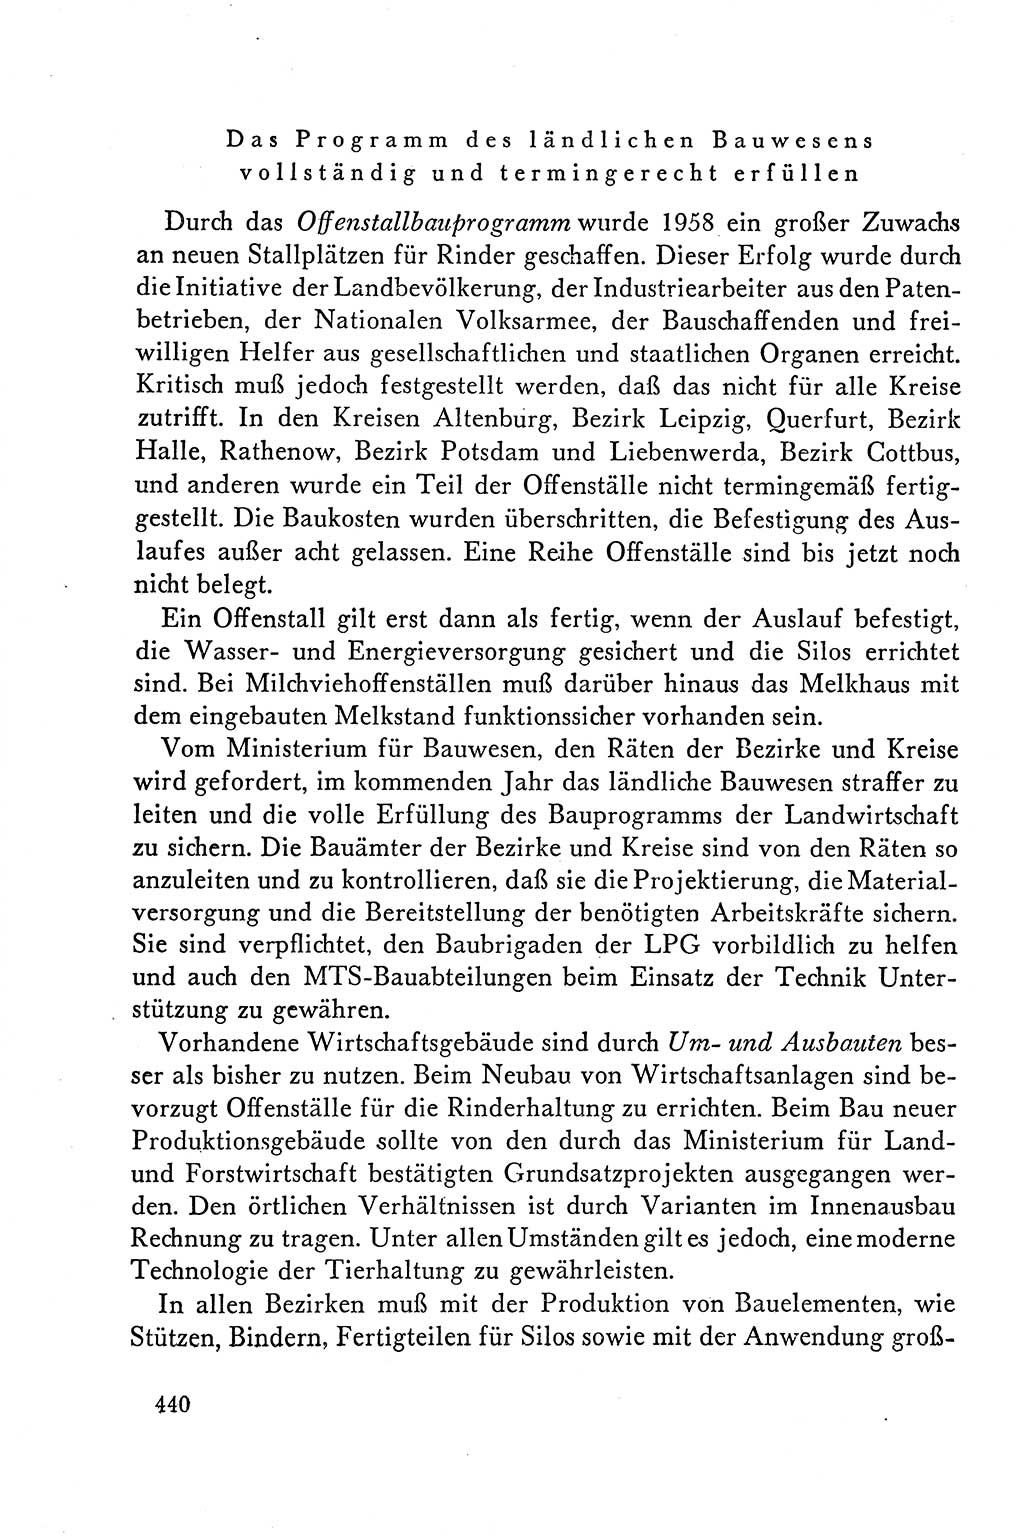 Dokumente der Sozialistischen Einheitspartei Deutschlands (SED) [Deutsche Demokratische Republik (DDR)] 1958-1959, Seite 440 (Dok. SED DDR 1958-1959, S. 440)